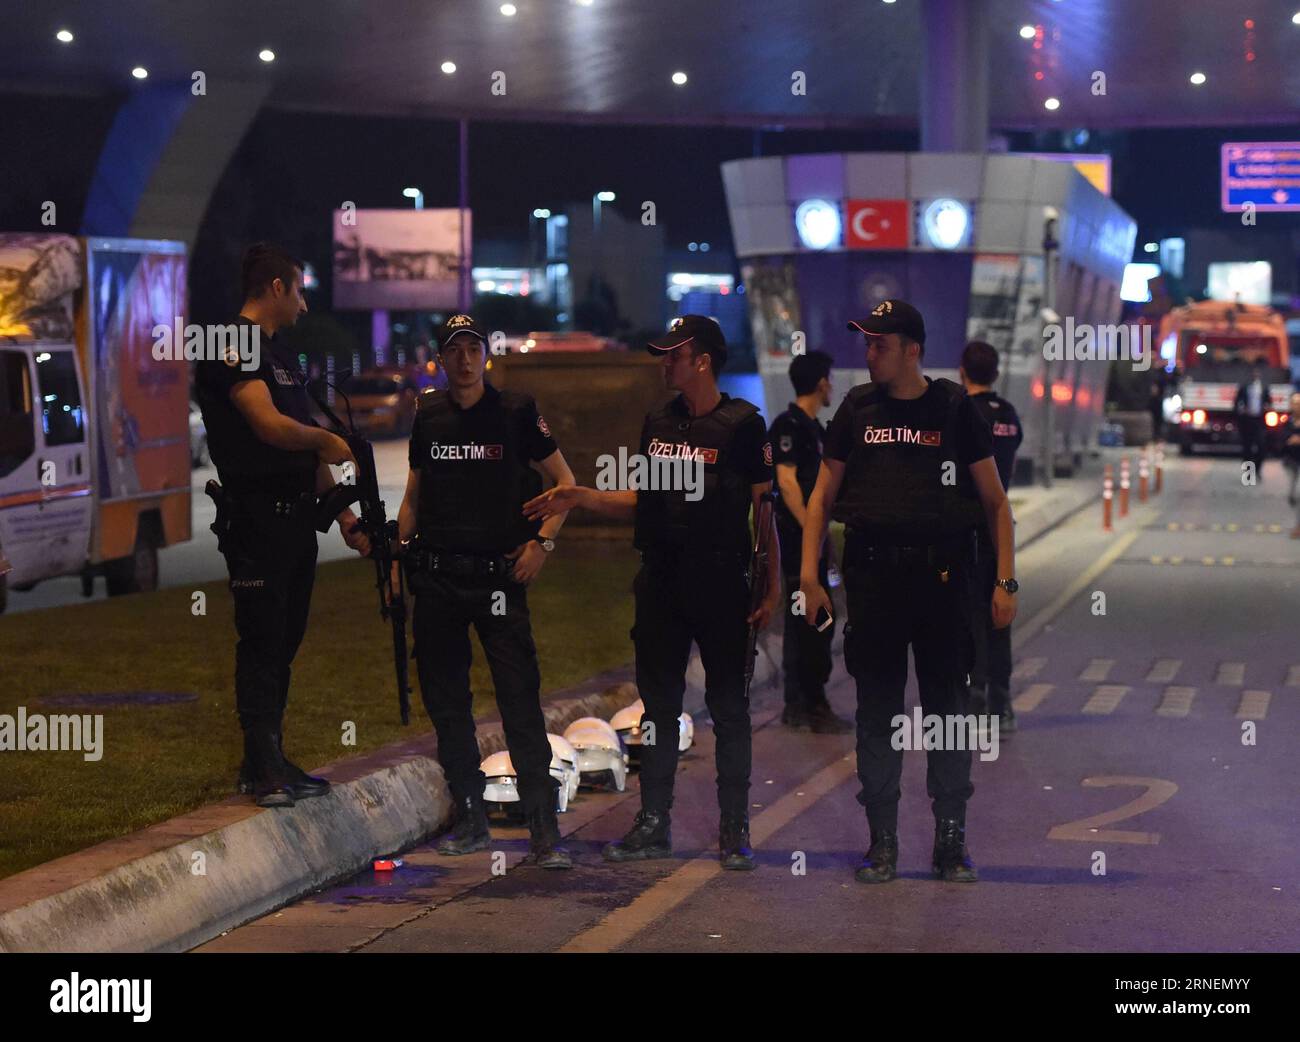 Türkei: Explosionen und Schüsse am Flughafen a Istanbul (160629) -- ISTANBUL, 29 giugno 2016 -- i poliziotti stanno di guardia fuori dall'aeroporto internazionale Ataturk di Istanbul, Turchia, 29 giugno 2016. Mercoledì il primo ministro turco Binali Yildirim ha incolpato lo Stato islamico per gli attentati che hanno ucciso 36 persone all'aeroporto martedì sera. ) TURCHIA-ISTANBUL-AEROPORTO-ESPLOSIONI HexCanling PUBLICATIONxNOTxINxCHN Turchia esplosioni e colpi all'aeroporto di Istanbul 160629 Istanbul giugno 29 2016 i poliziotti stanno di guardia davanti all'aeroporto internazionale ATATURK di Istanbul Turchia giugno 29 2016 Pr. Turca Foto Stock